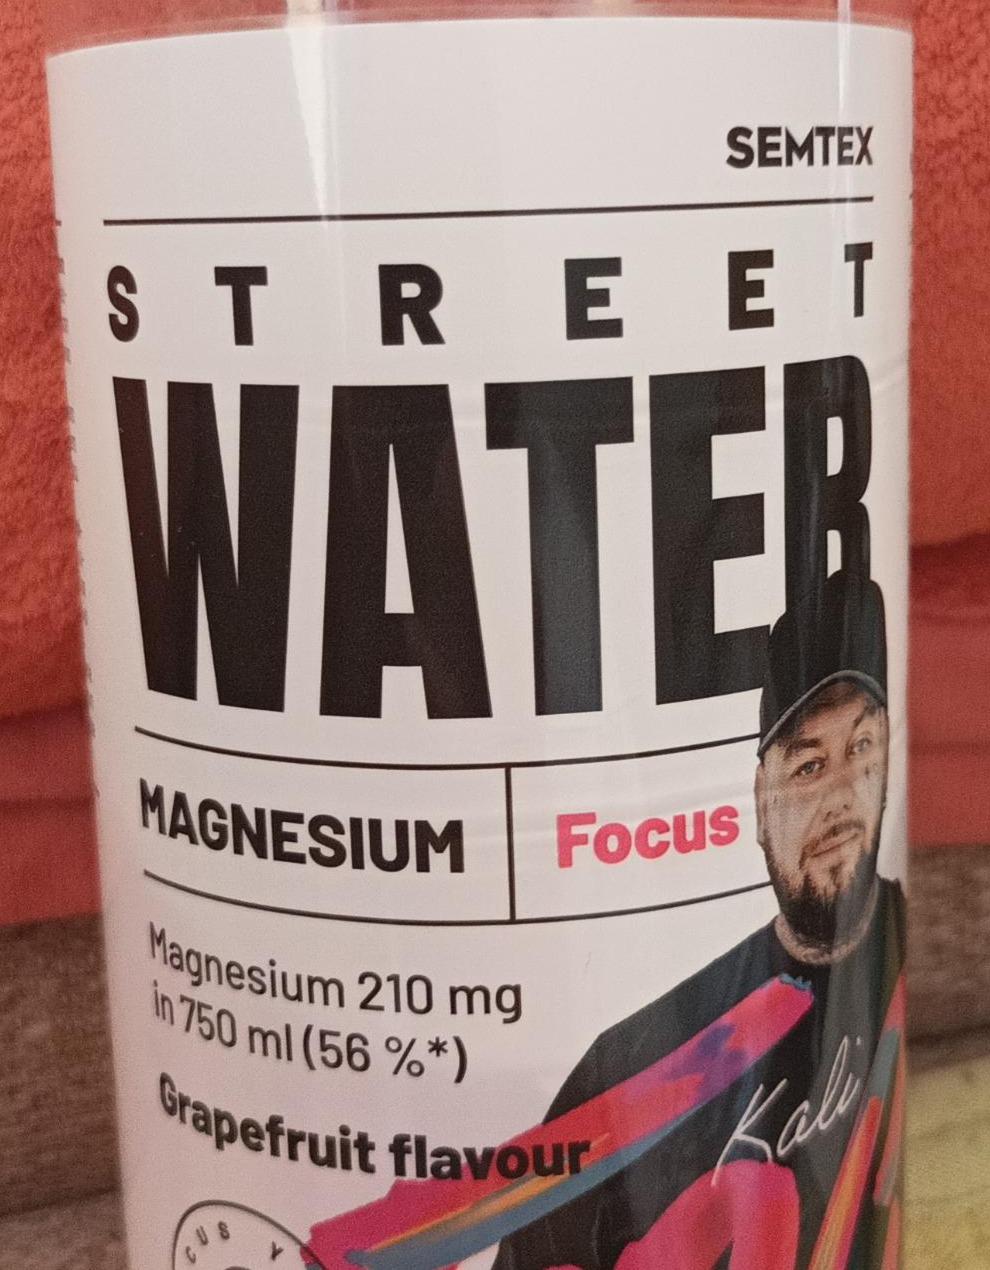 Fotografie - Street Water Magnesium Focus Semtex